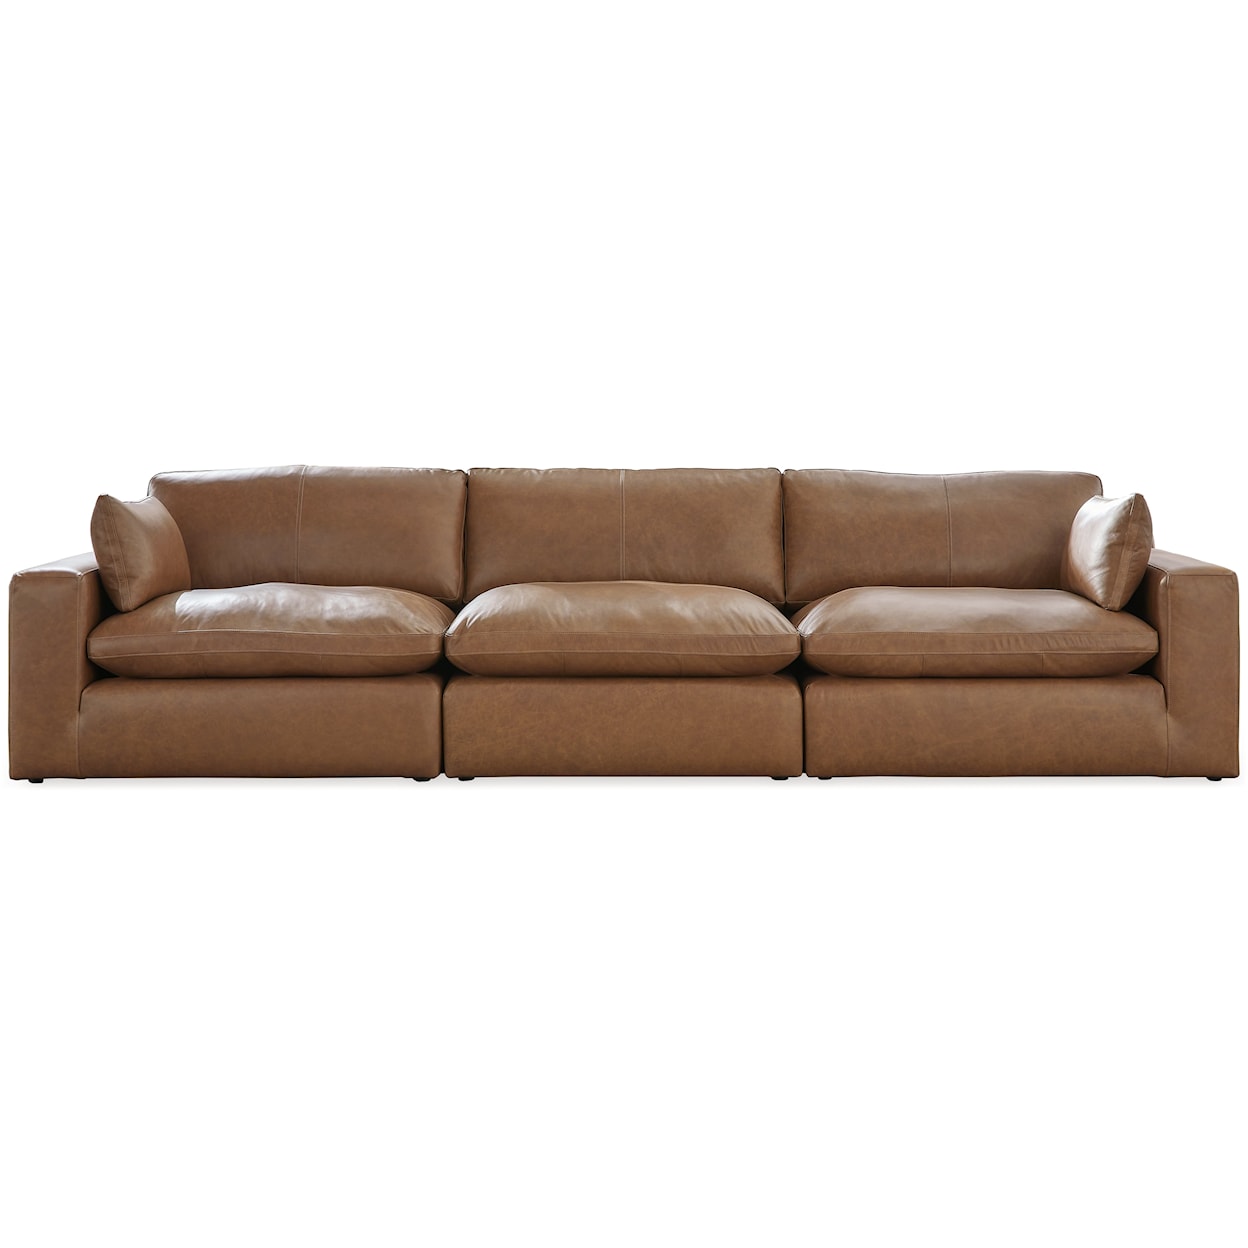 Ashley Furniture Signature Design Emilia 3-Piece Sectional Sofa